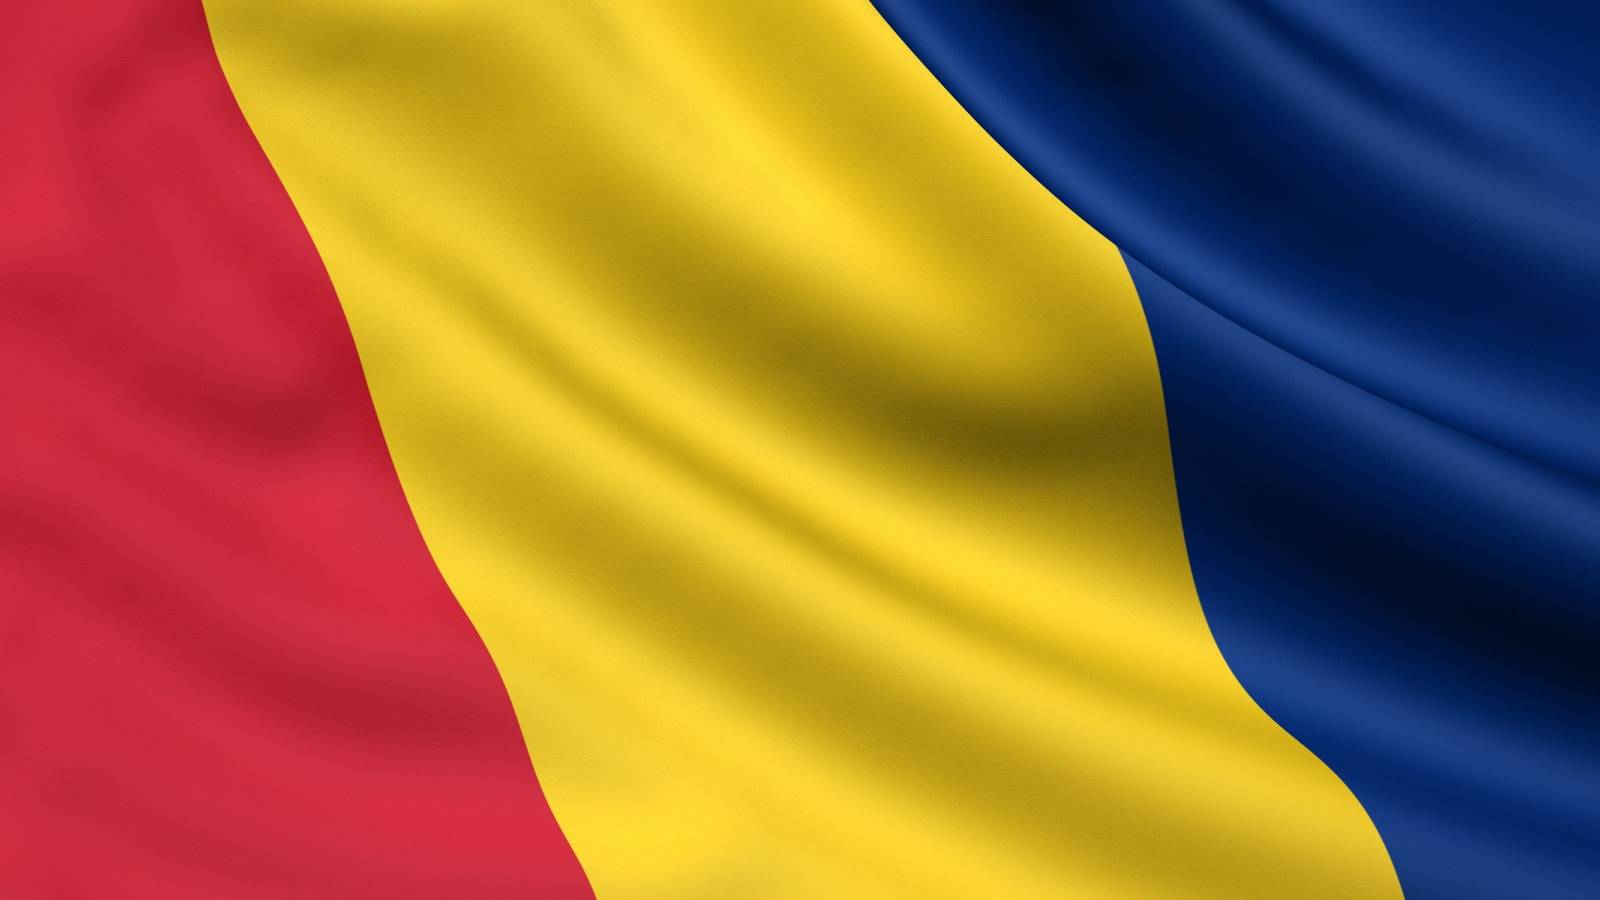 Romania vakava vaara Uusi rajoitusmaa